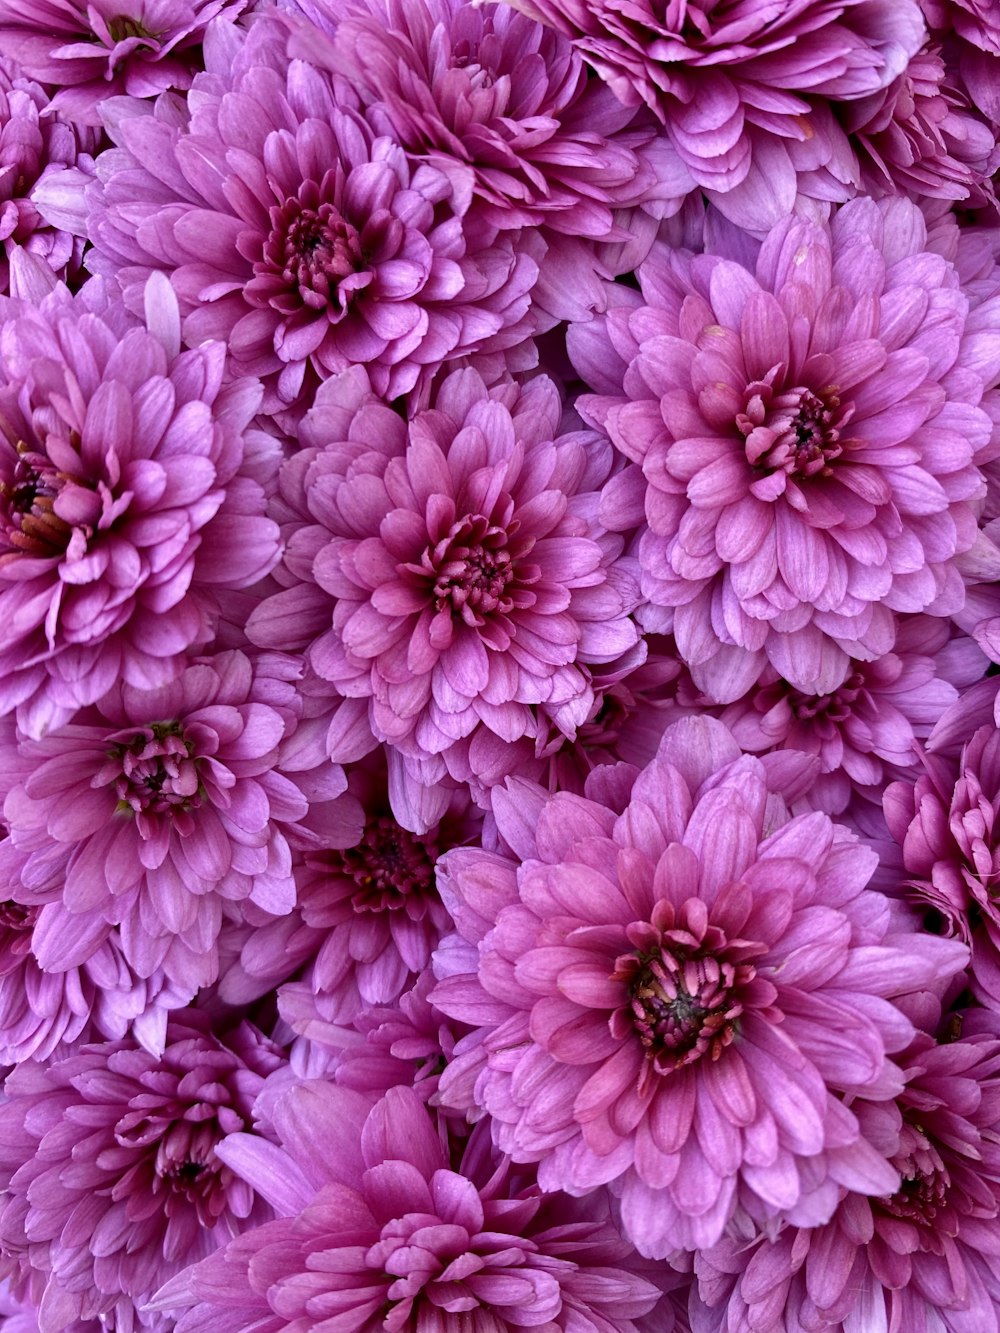 pink flowers in macro lens